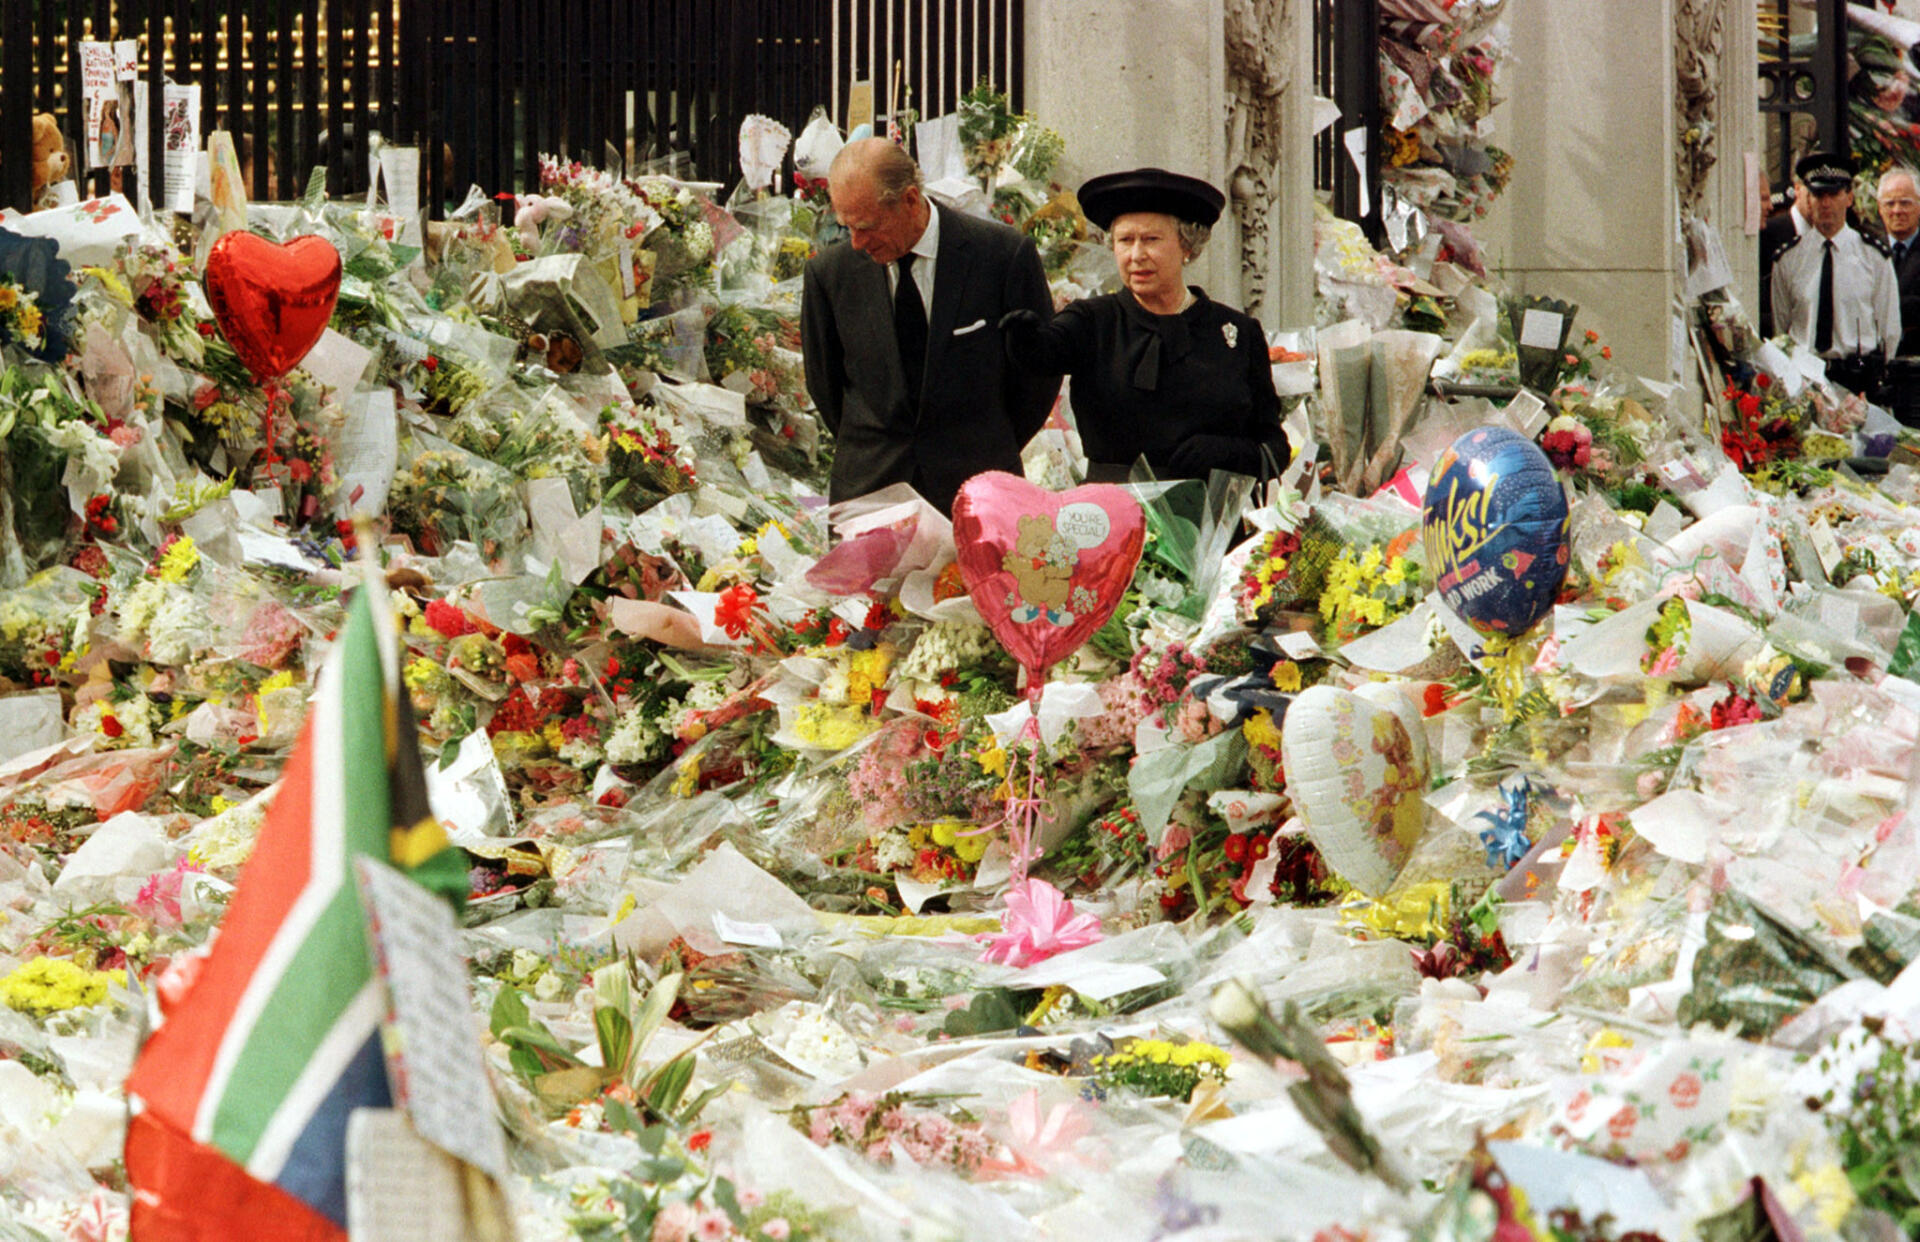 La reine Elizabeth II et le duc d’Edimbourg regardent la masse d’hommages floraux déposés devant le palais de Buckingham à la mémoire de Diana, princesse de Galles, le 5 septembre 1997.